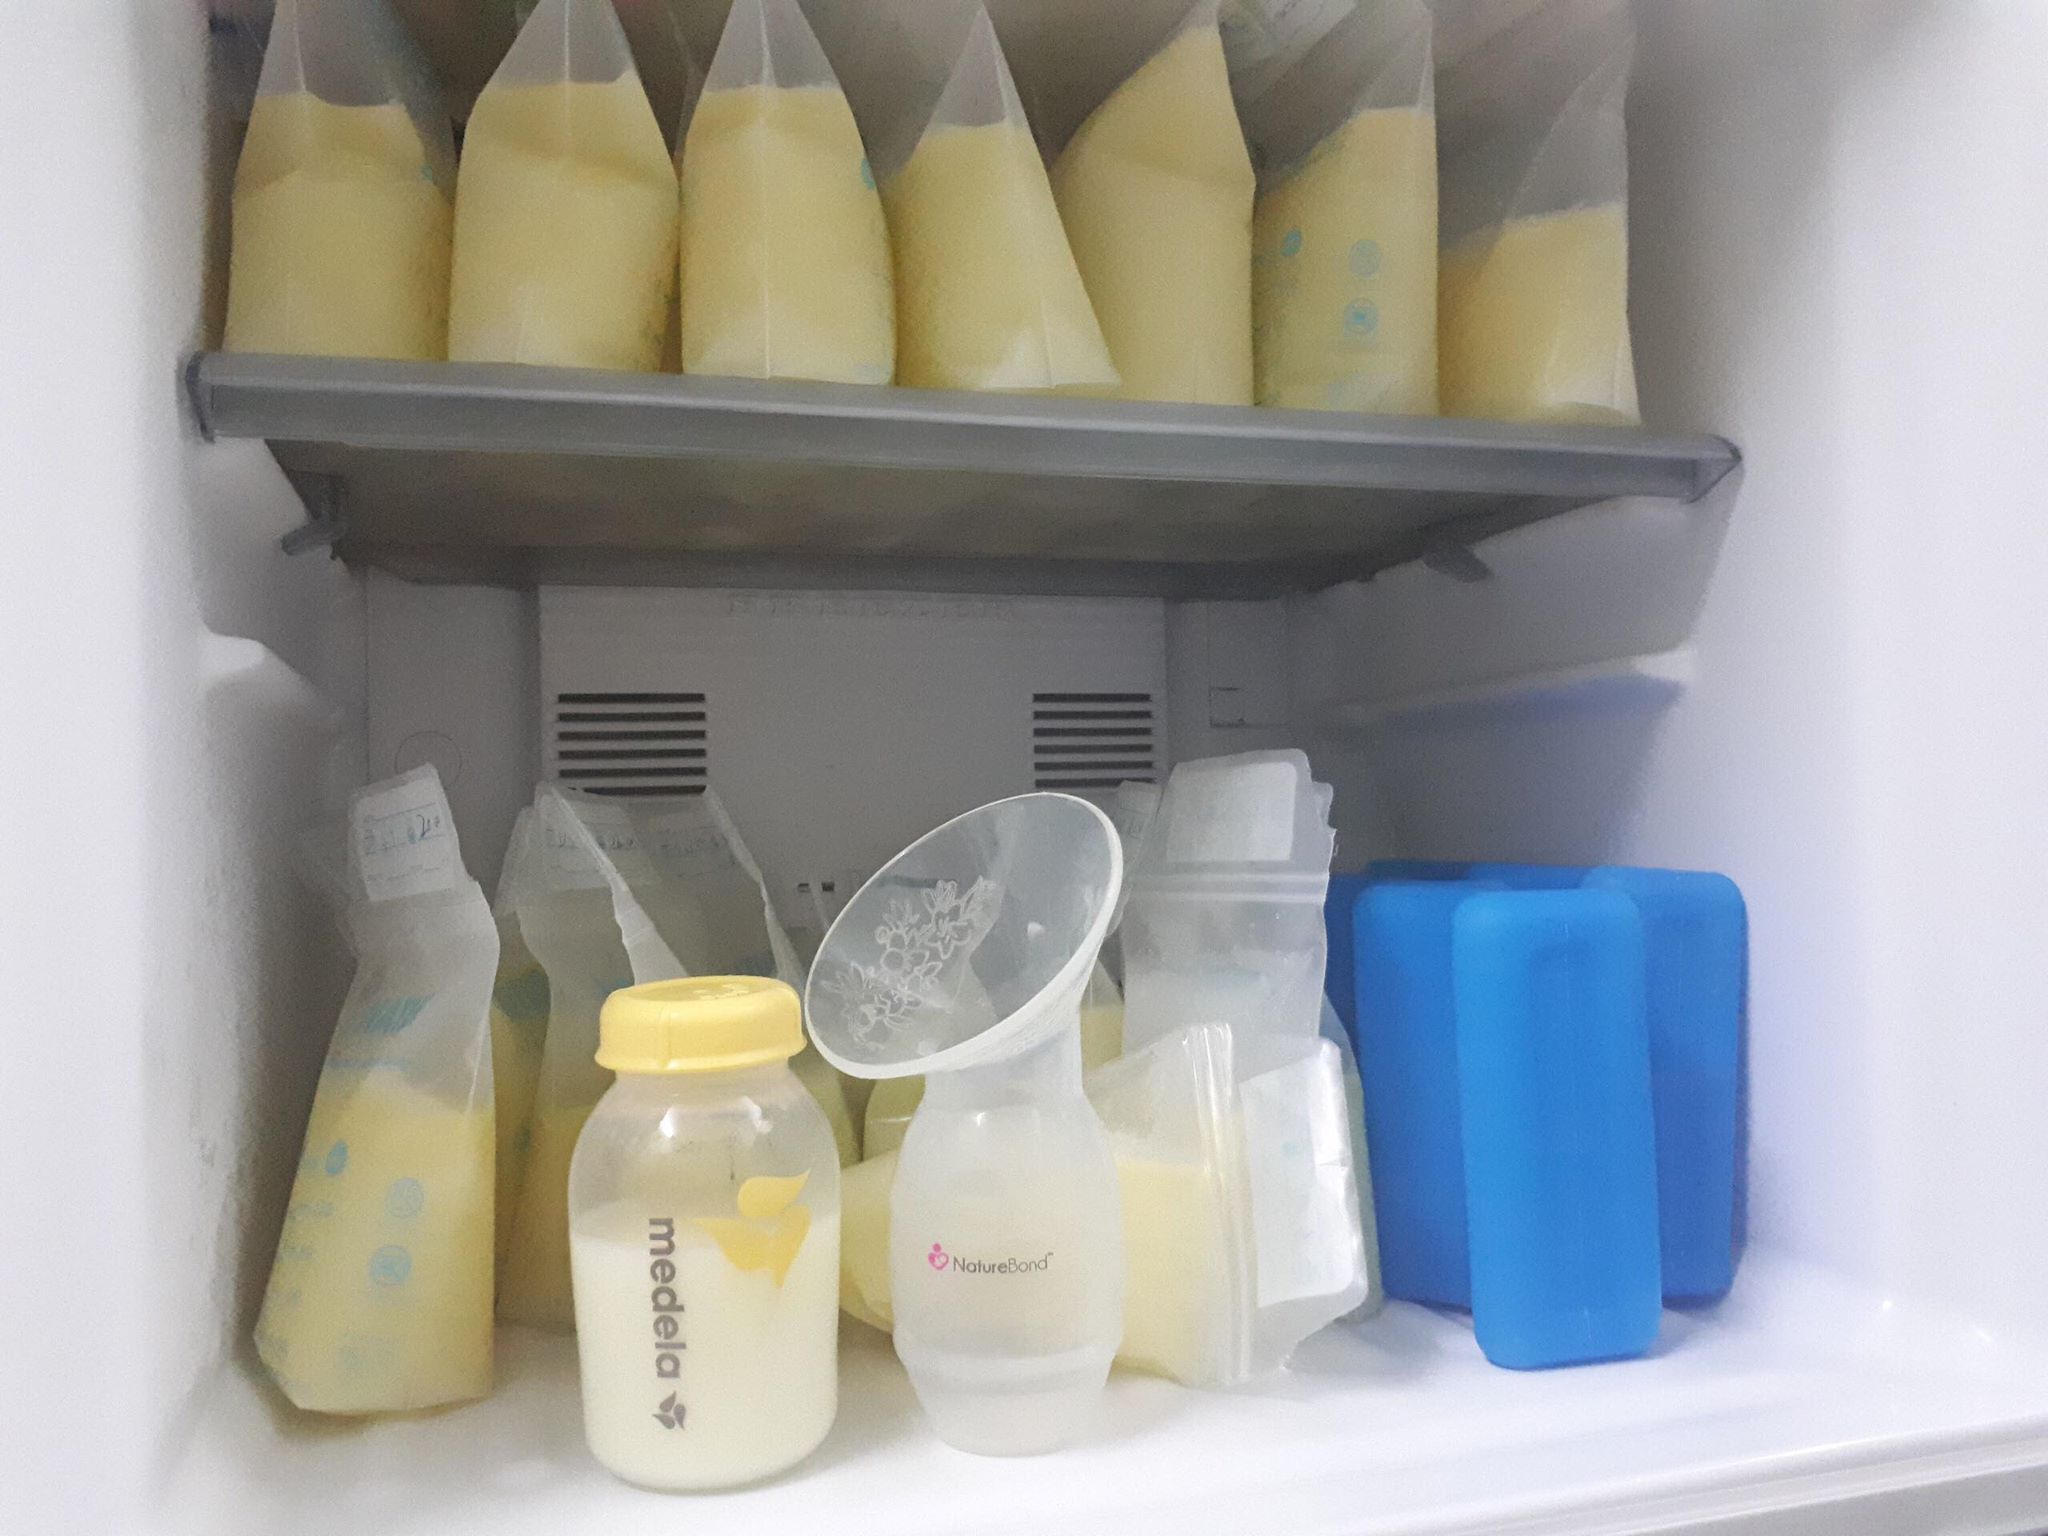 Máy Hút Sữa Silicone NatureBond 3 Mức Hút Chứng Nhận FDA Model 2019 -  Hàng Chính Hãng